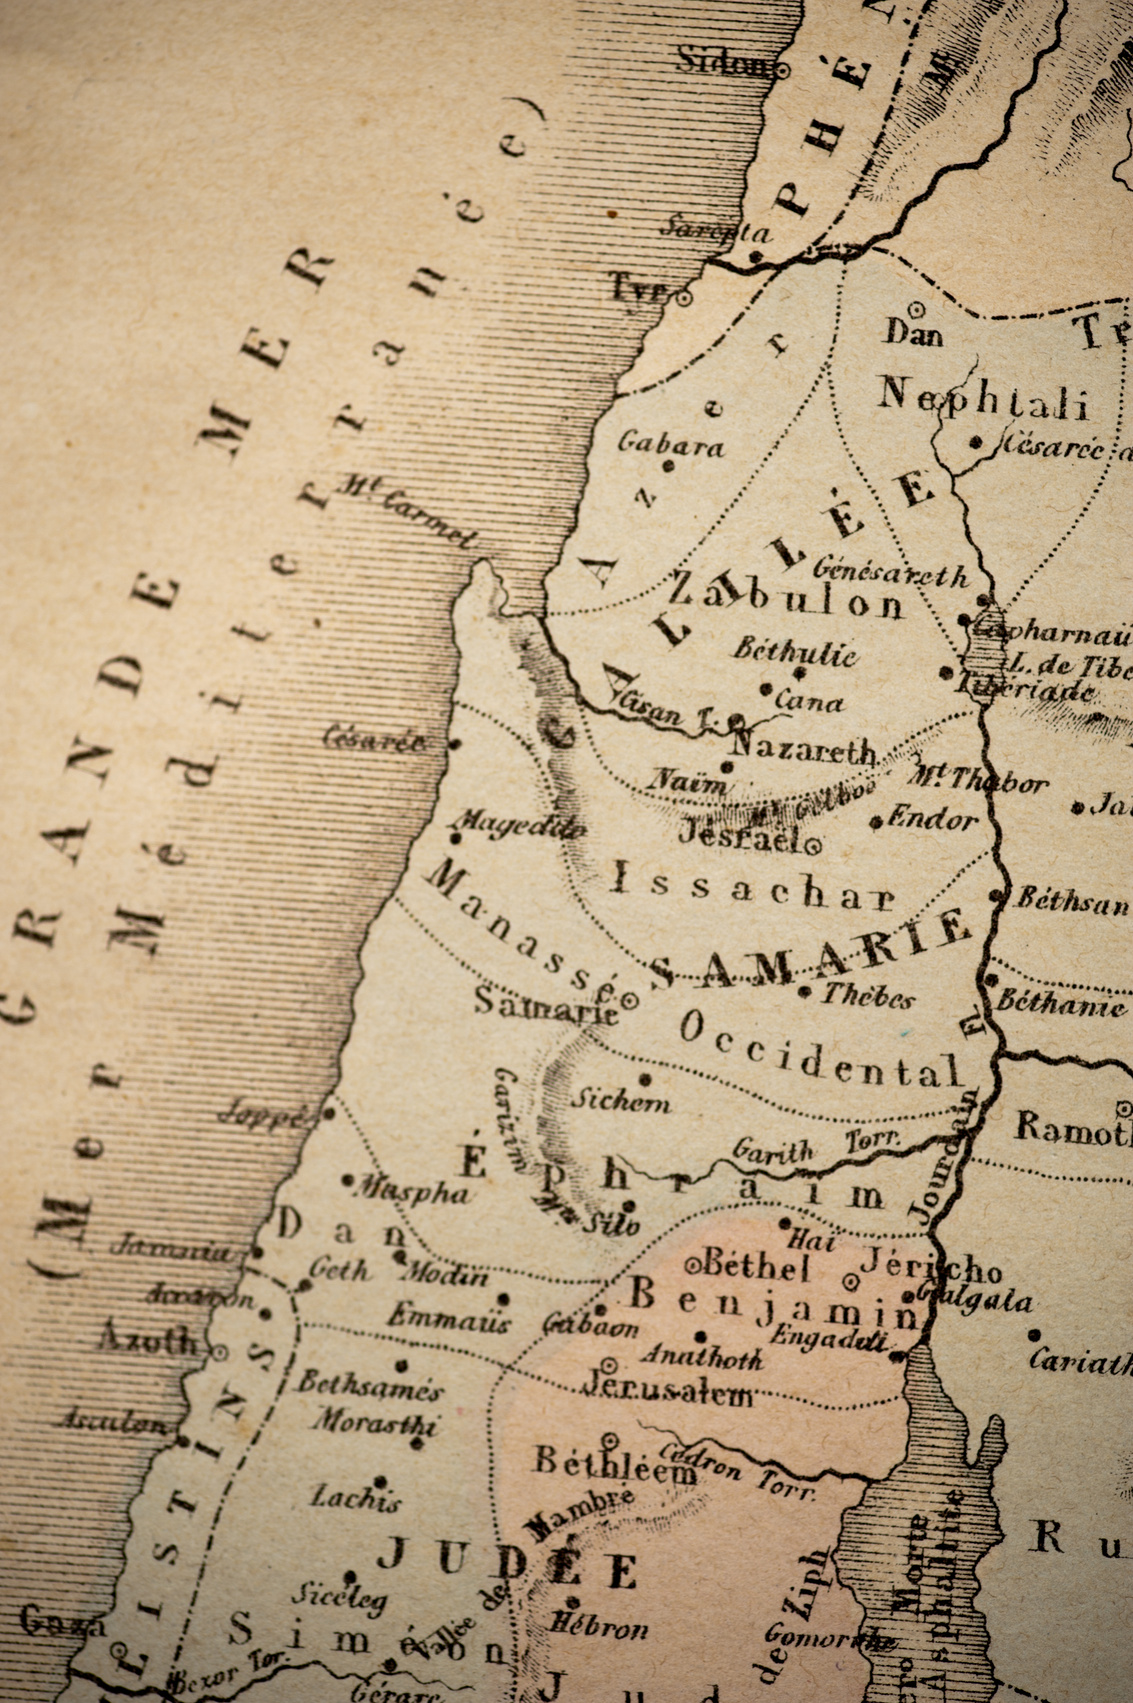 Vintage Map of the Mediterranean Sea, Israel, Jordan, Judee, Samarie, Bethlehem, Jerusalem, and Nazareth